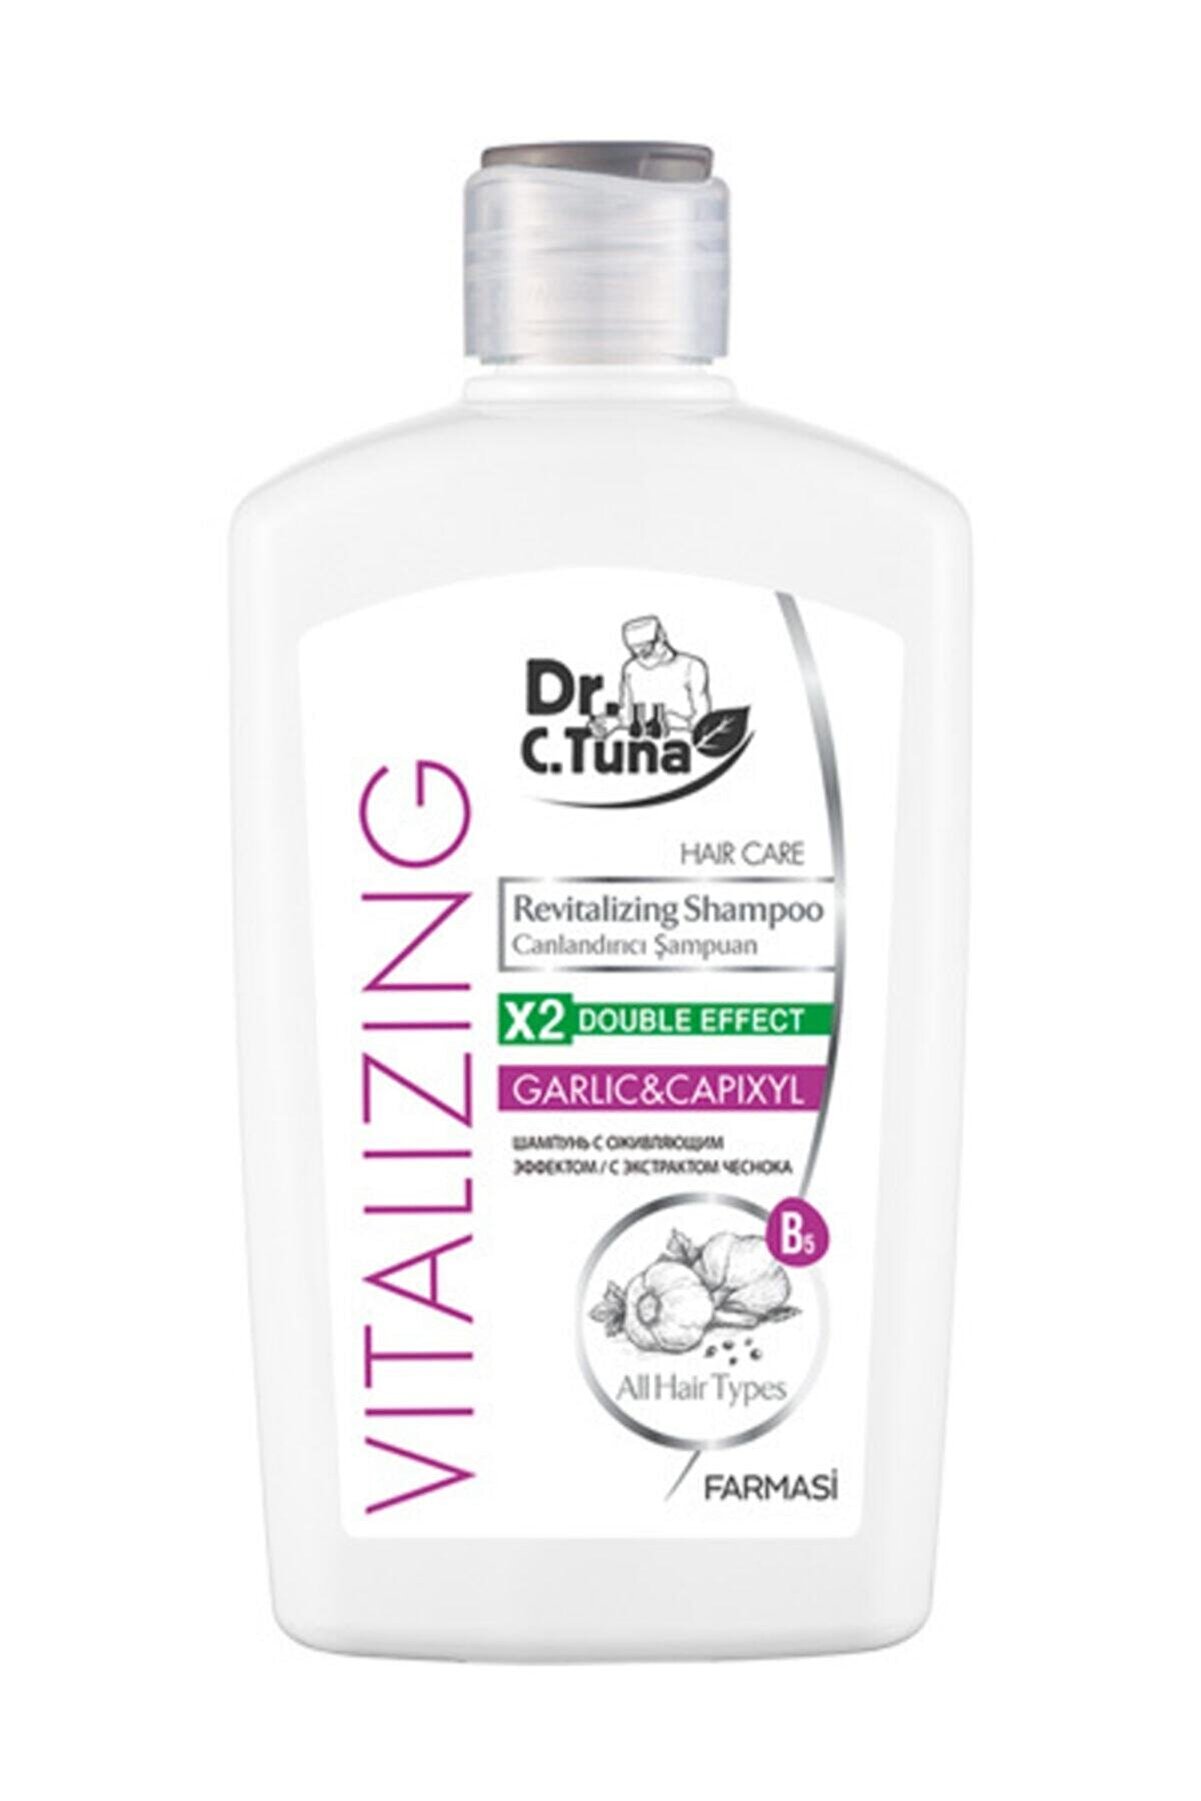 Farmasi Dr. C. Tuna Vitalizing Tüm Saçlar Için Canlandırıcı Sarımsaklı Şampuan 500 ml